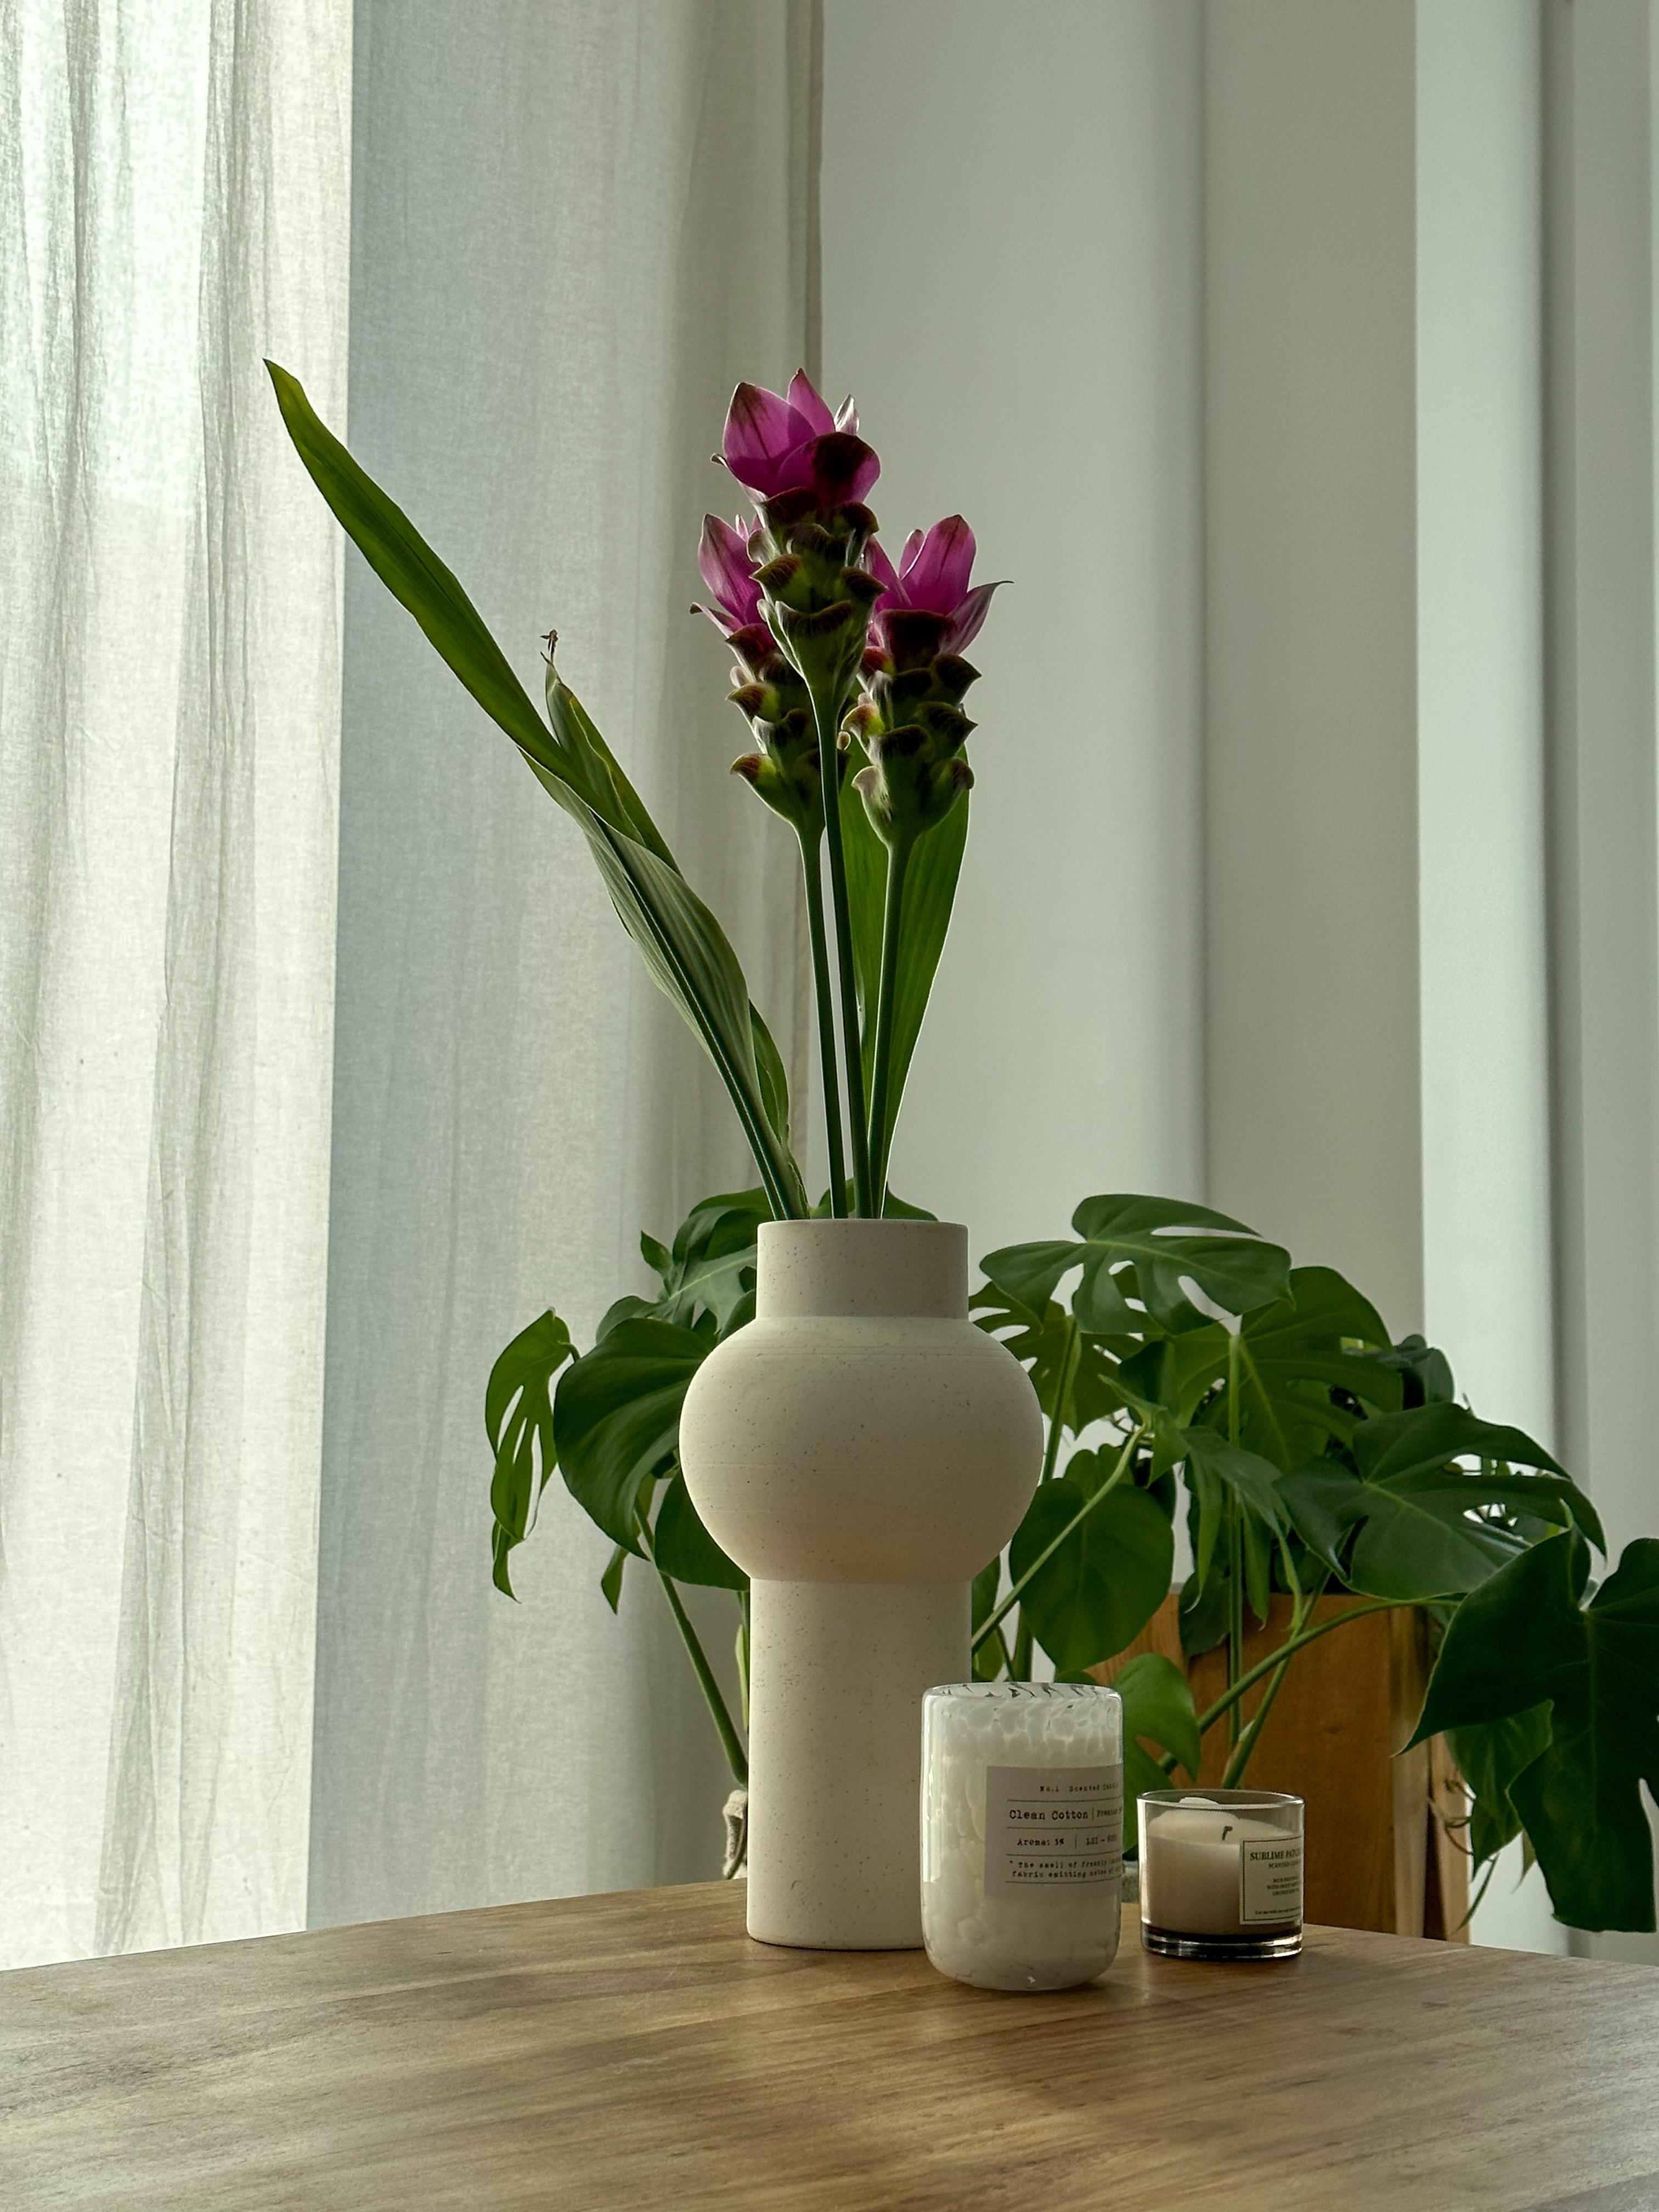 #couchtisch #vase #blumenvase #frischeblumen #details #dekoideen #pflanzenliebe #duftkerzen